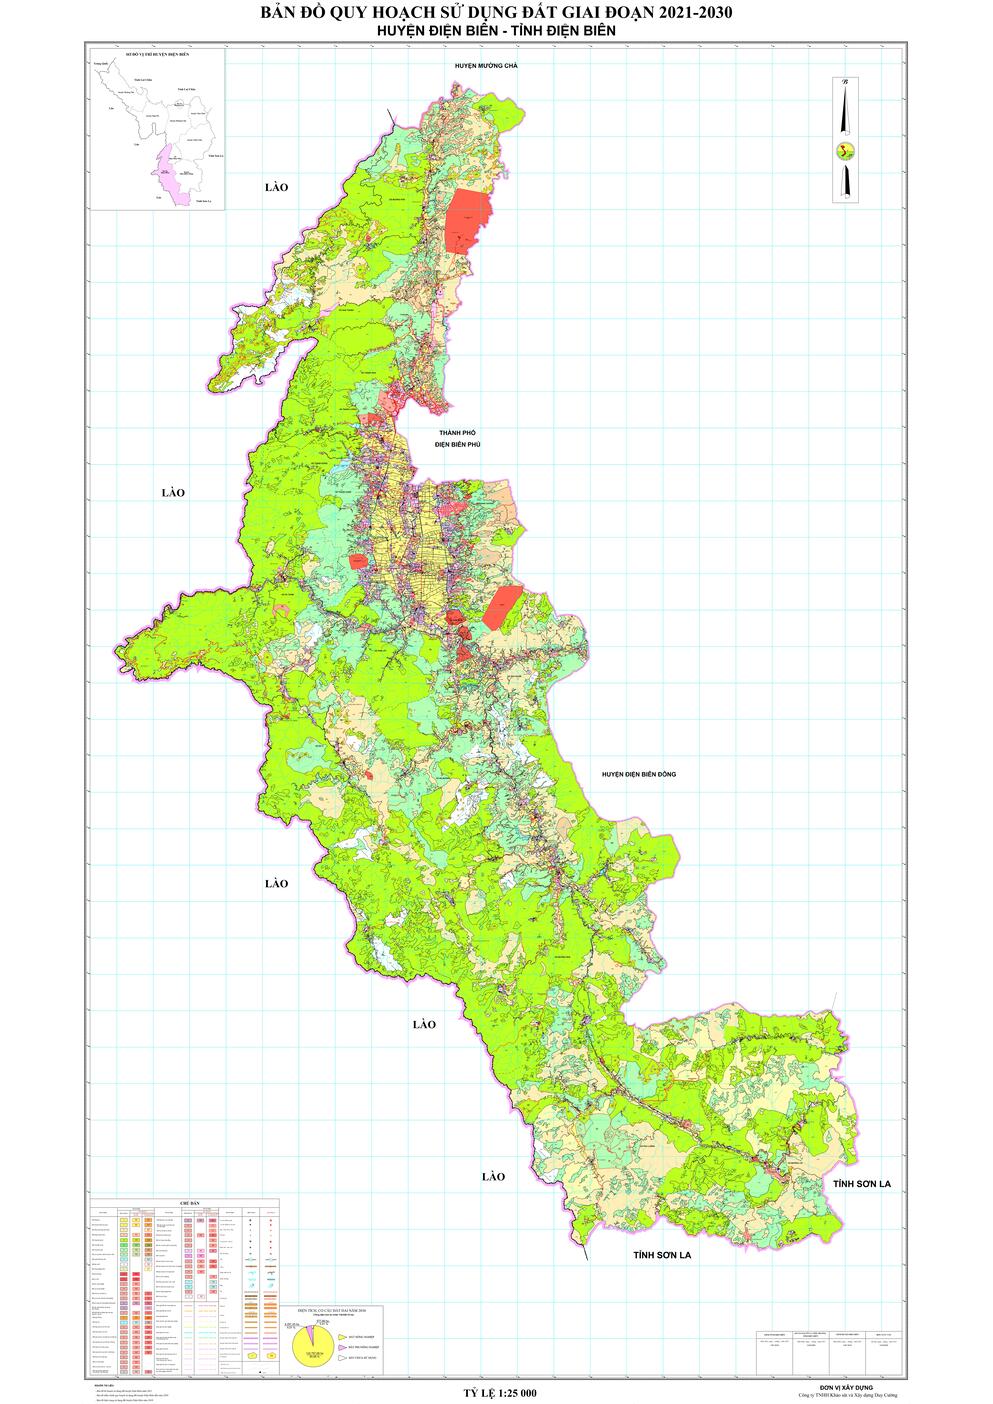 Bản đồ quy hoạch huyện Điện Biên, tỉnh Điện Biên đến năm 2030